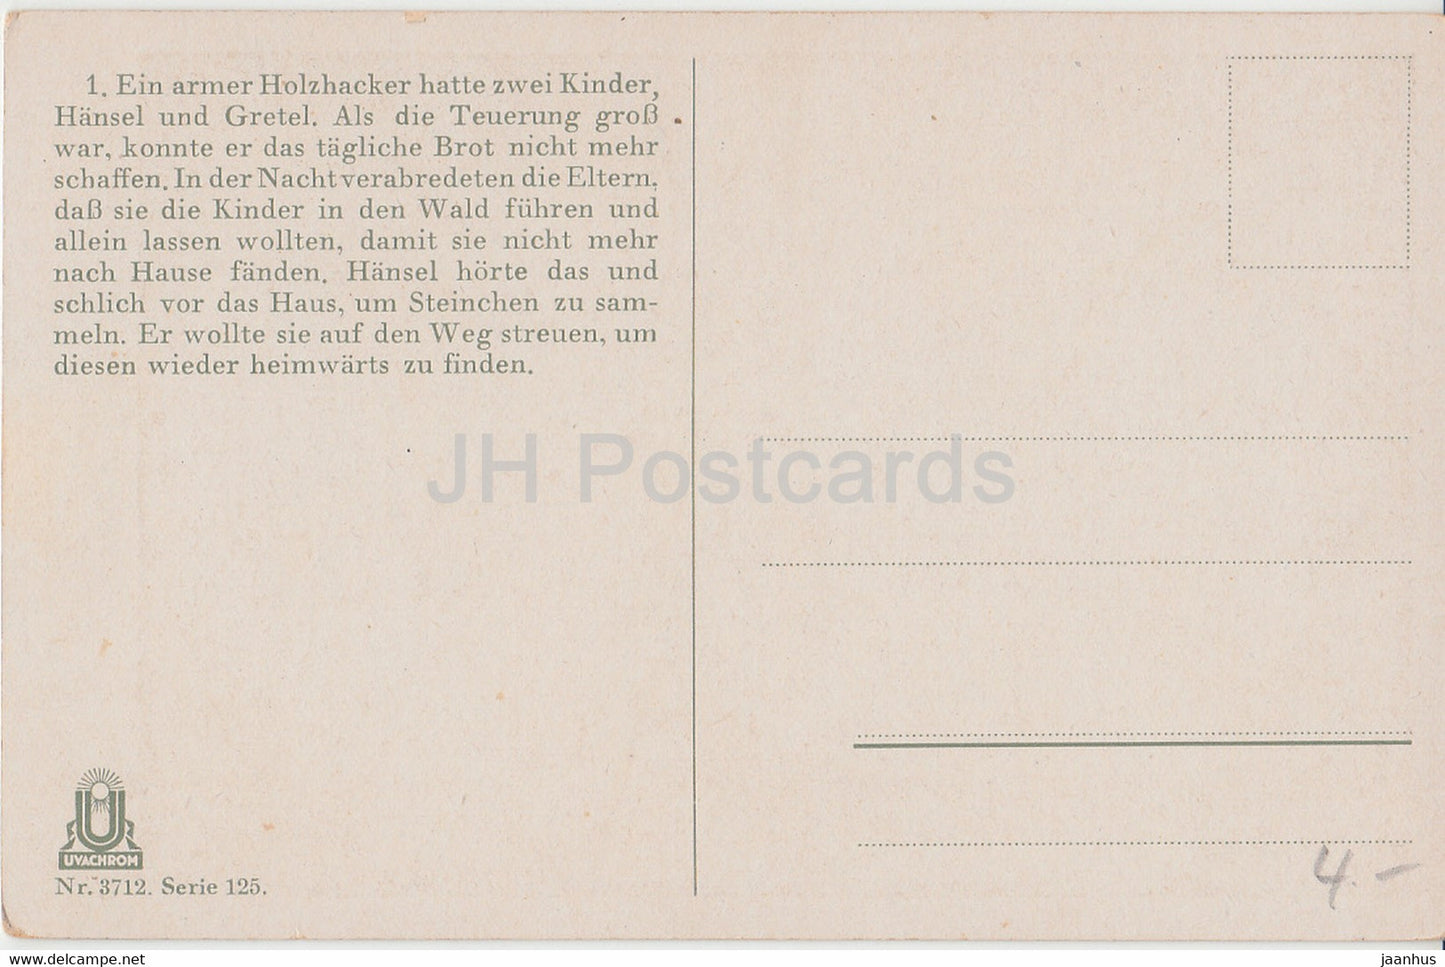 Bruder Grimm - Hansel und Gretel - illustration by Otto Kubel - boy - cat - Uvachrom 3712 - old postcard - unused